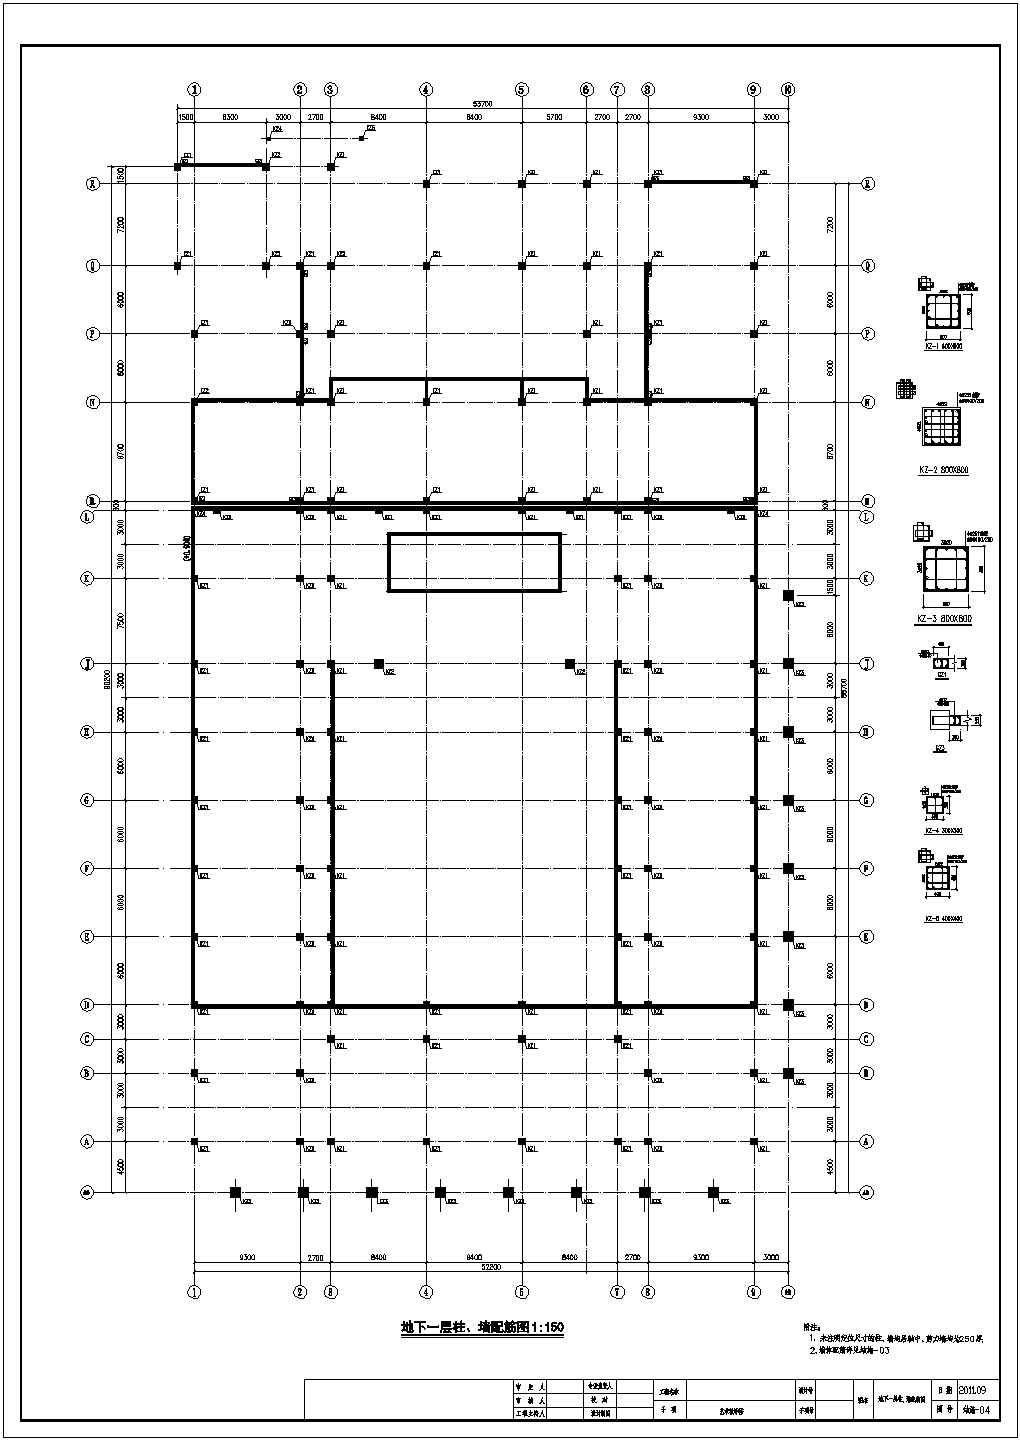 地上七层框架剪力墙结构艺术教学楼结构施工图（含计算书 对应字体）